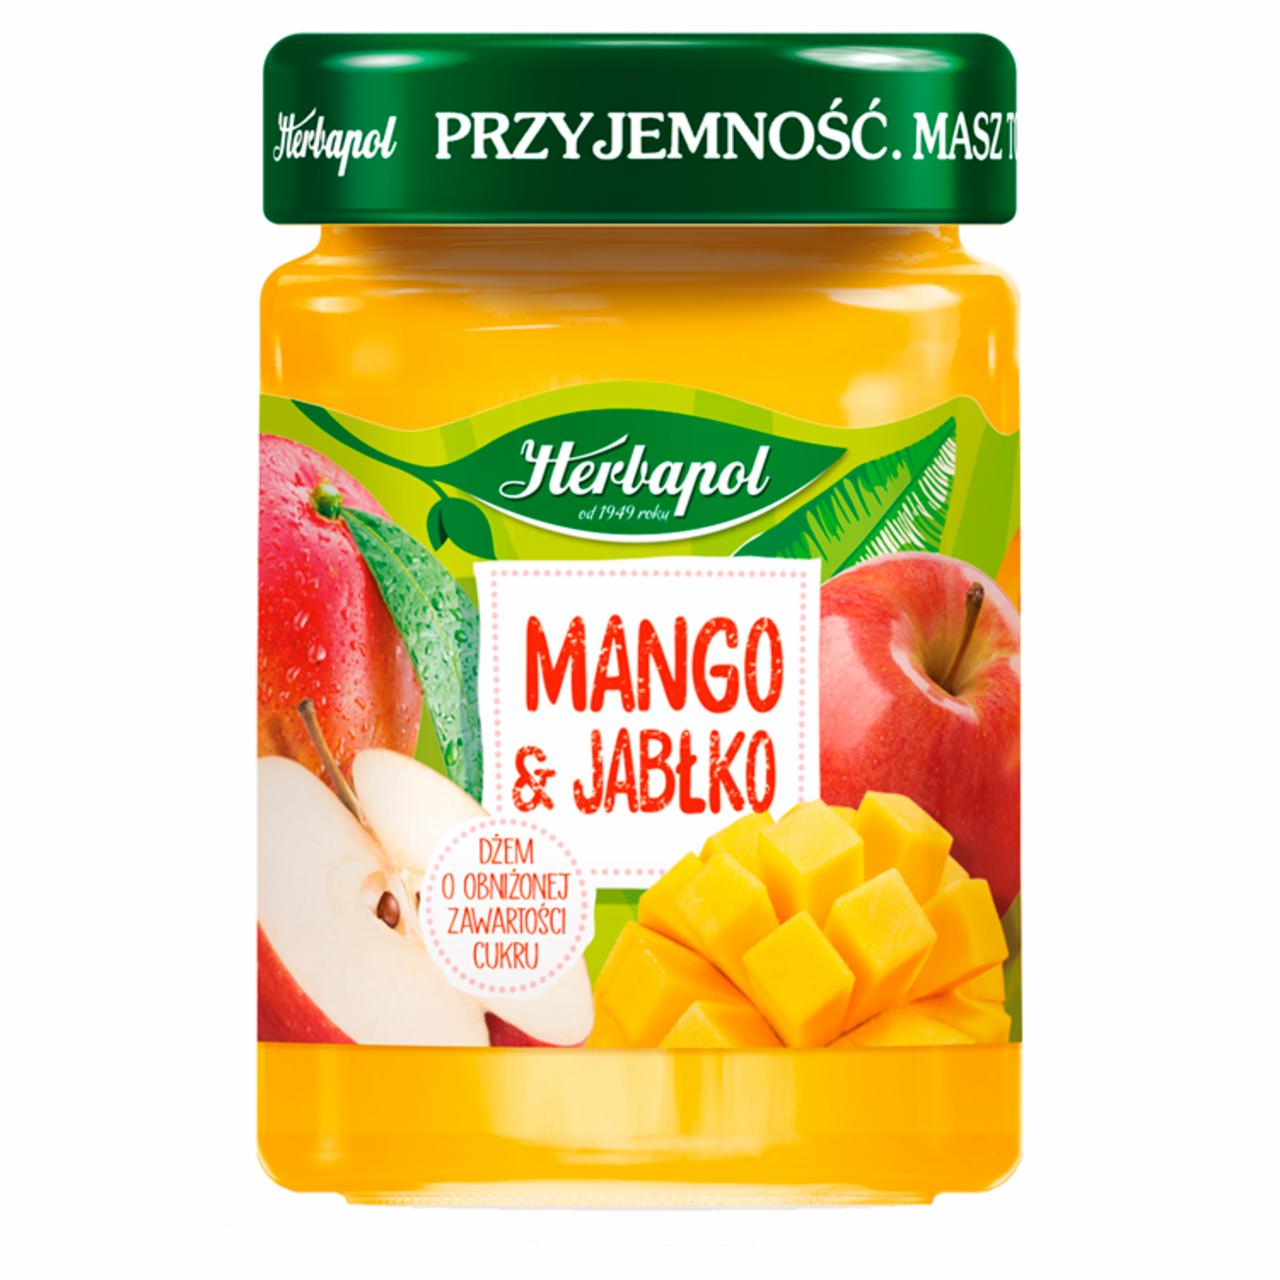 Zdjęcia - Herbapol Dżem o obniżonej zawartości cukru mango & jabłko 280 g